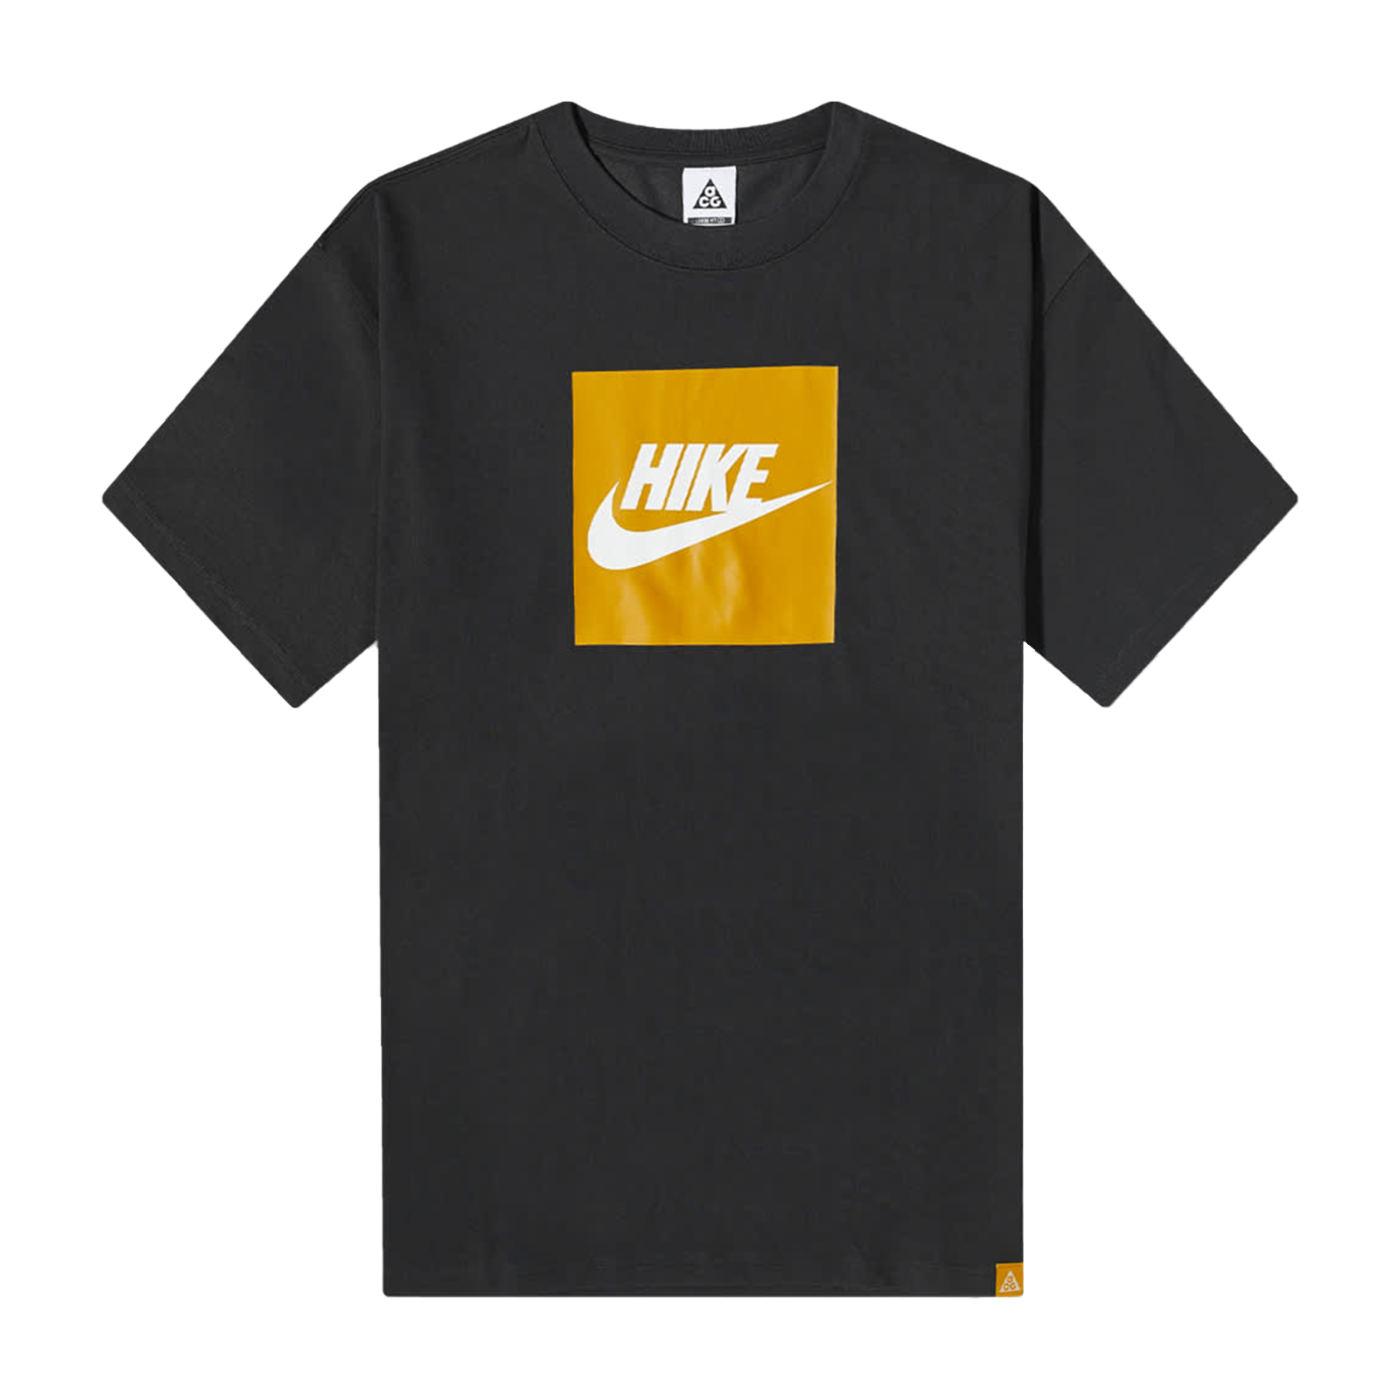 'Hike Box' T-Shirt